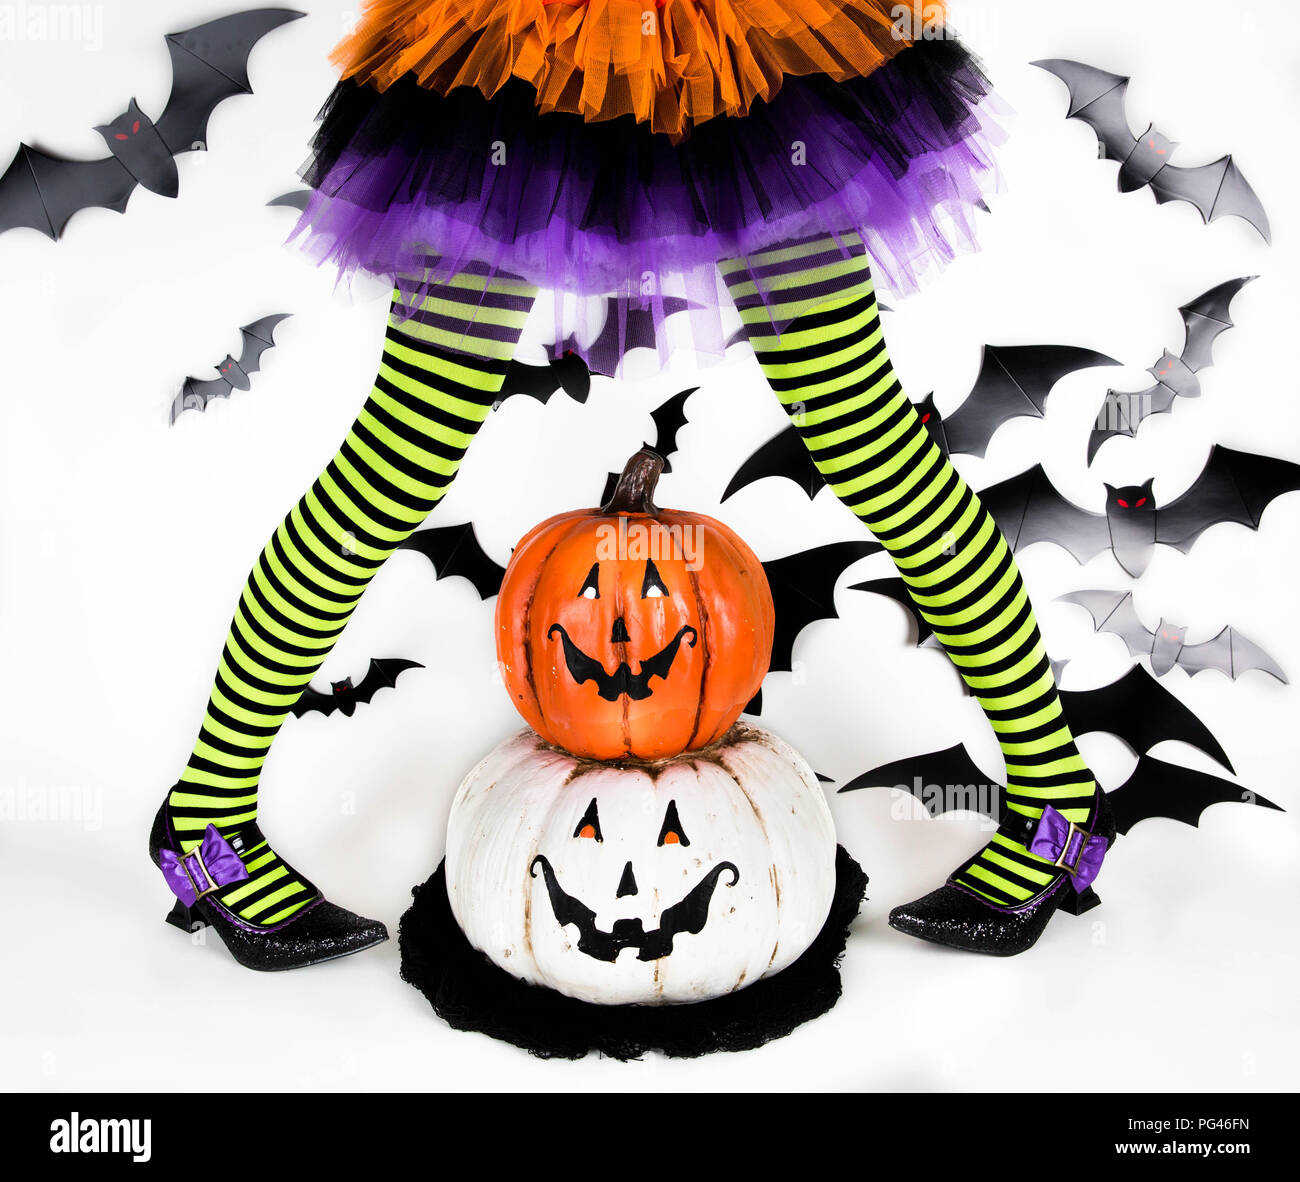 Gracioso negro con rayas verdes en las piernas de una niña con disfraz de Halloween de una bruja con zapatos de bruja y sonriente calabaza de Halloween jack o lantern Foto de stock